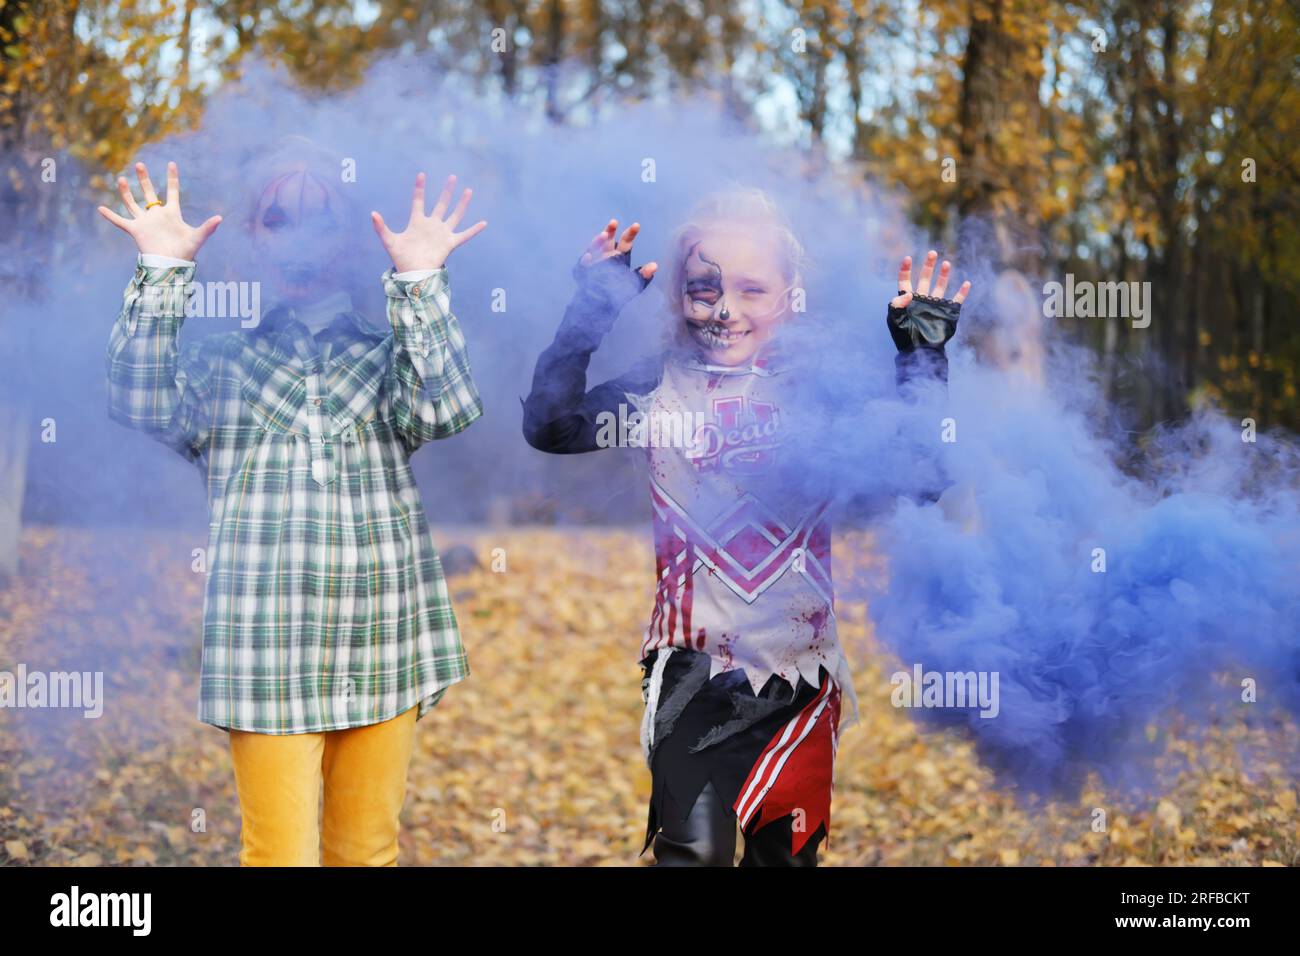 Zwei Kinder Mädchen Mädchen Freundinnen in Halloween-Kostümen und mit Make-up machen erschreckende Grimaces vor dem Hintergrund von Herbstblättern und lila schminke Stockfoto